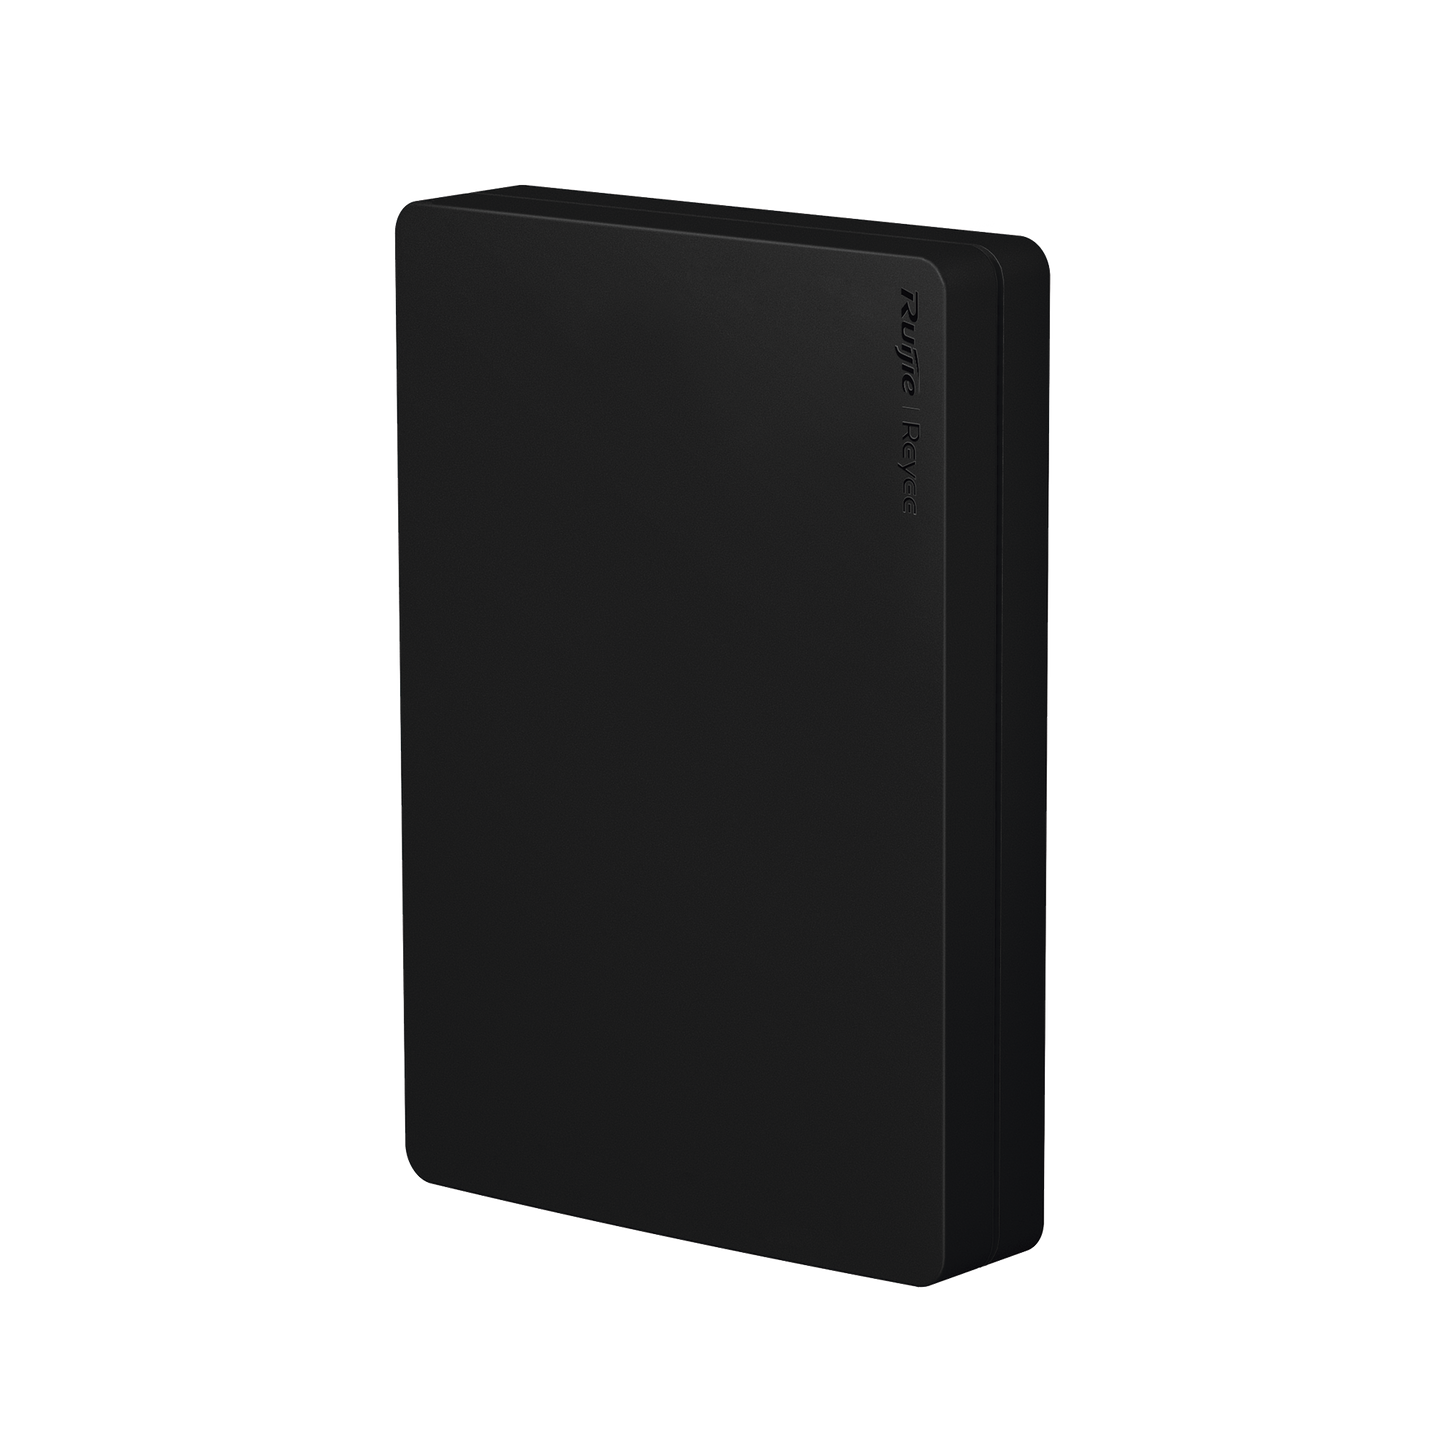 Caratula protectora color Negro 1 pieza para Access Point modelo RG-RAP1260